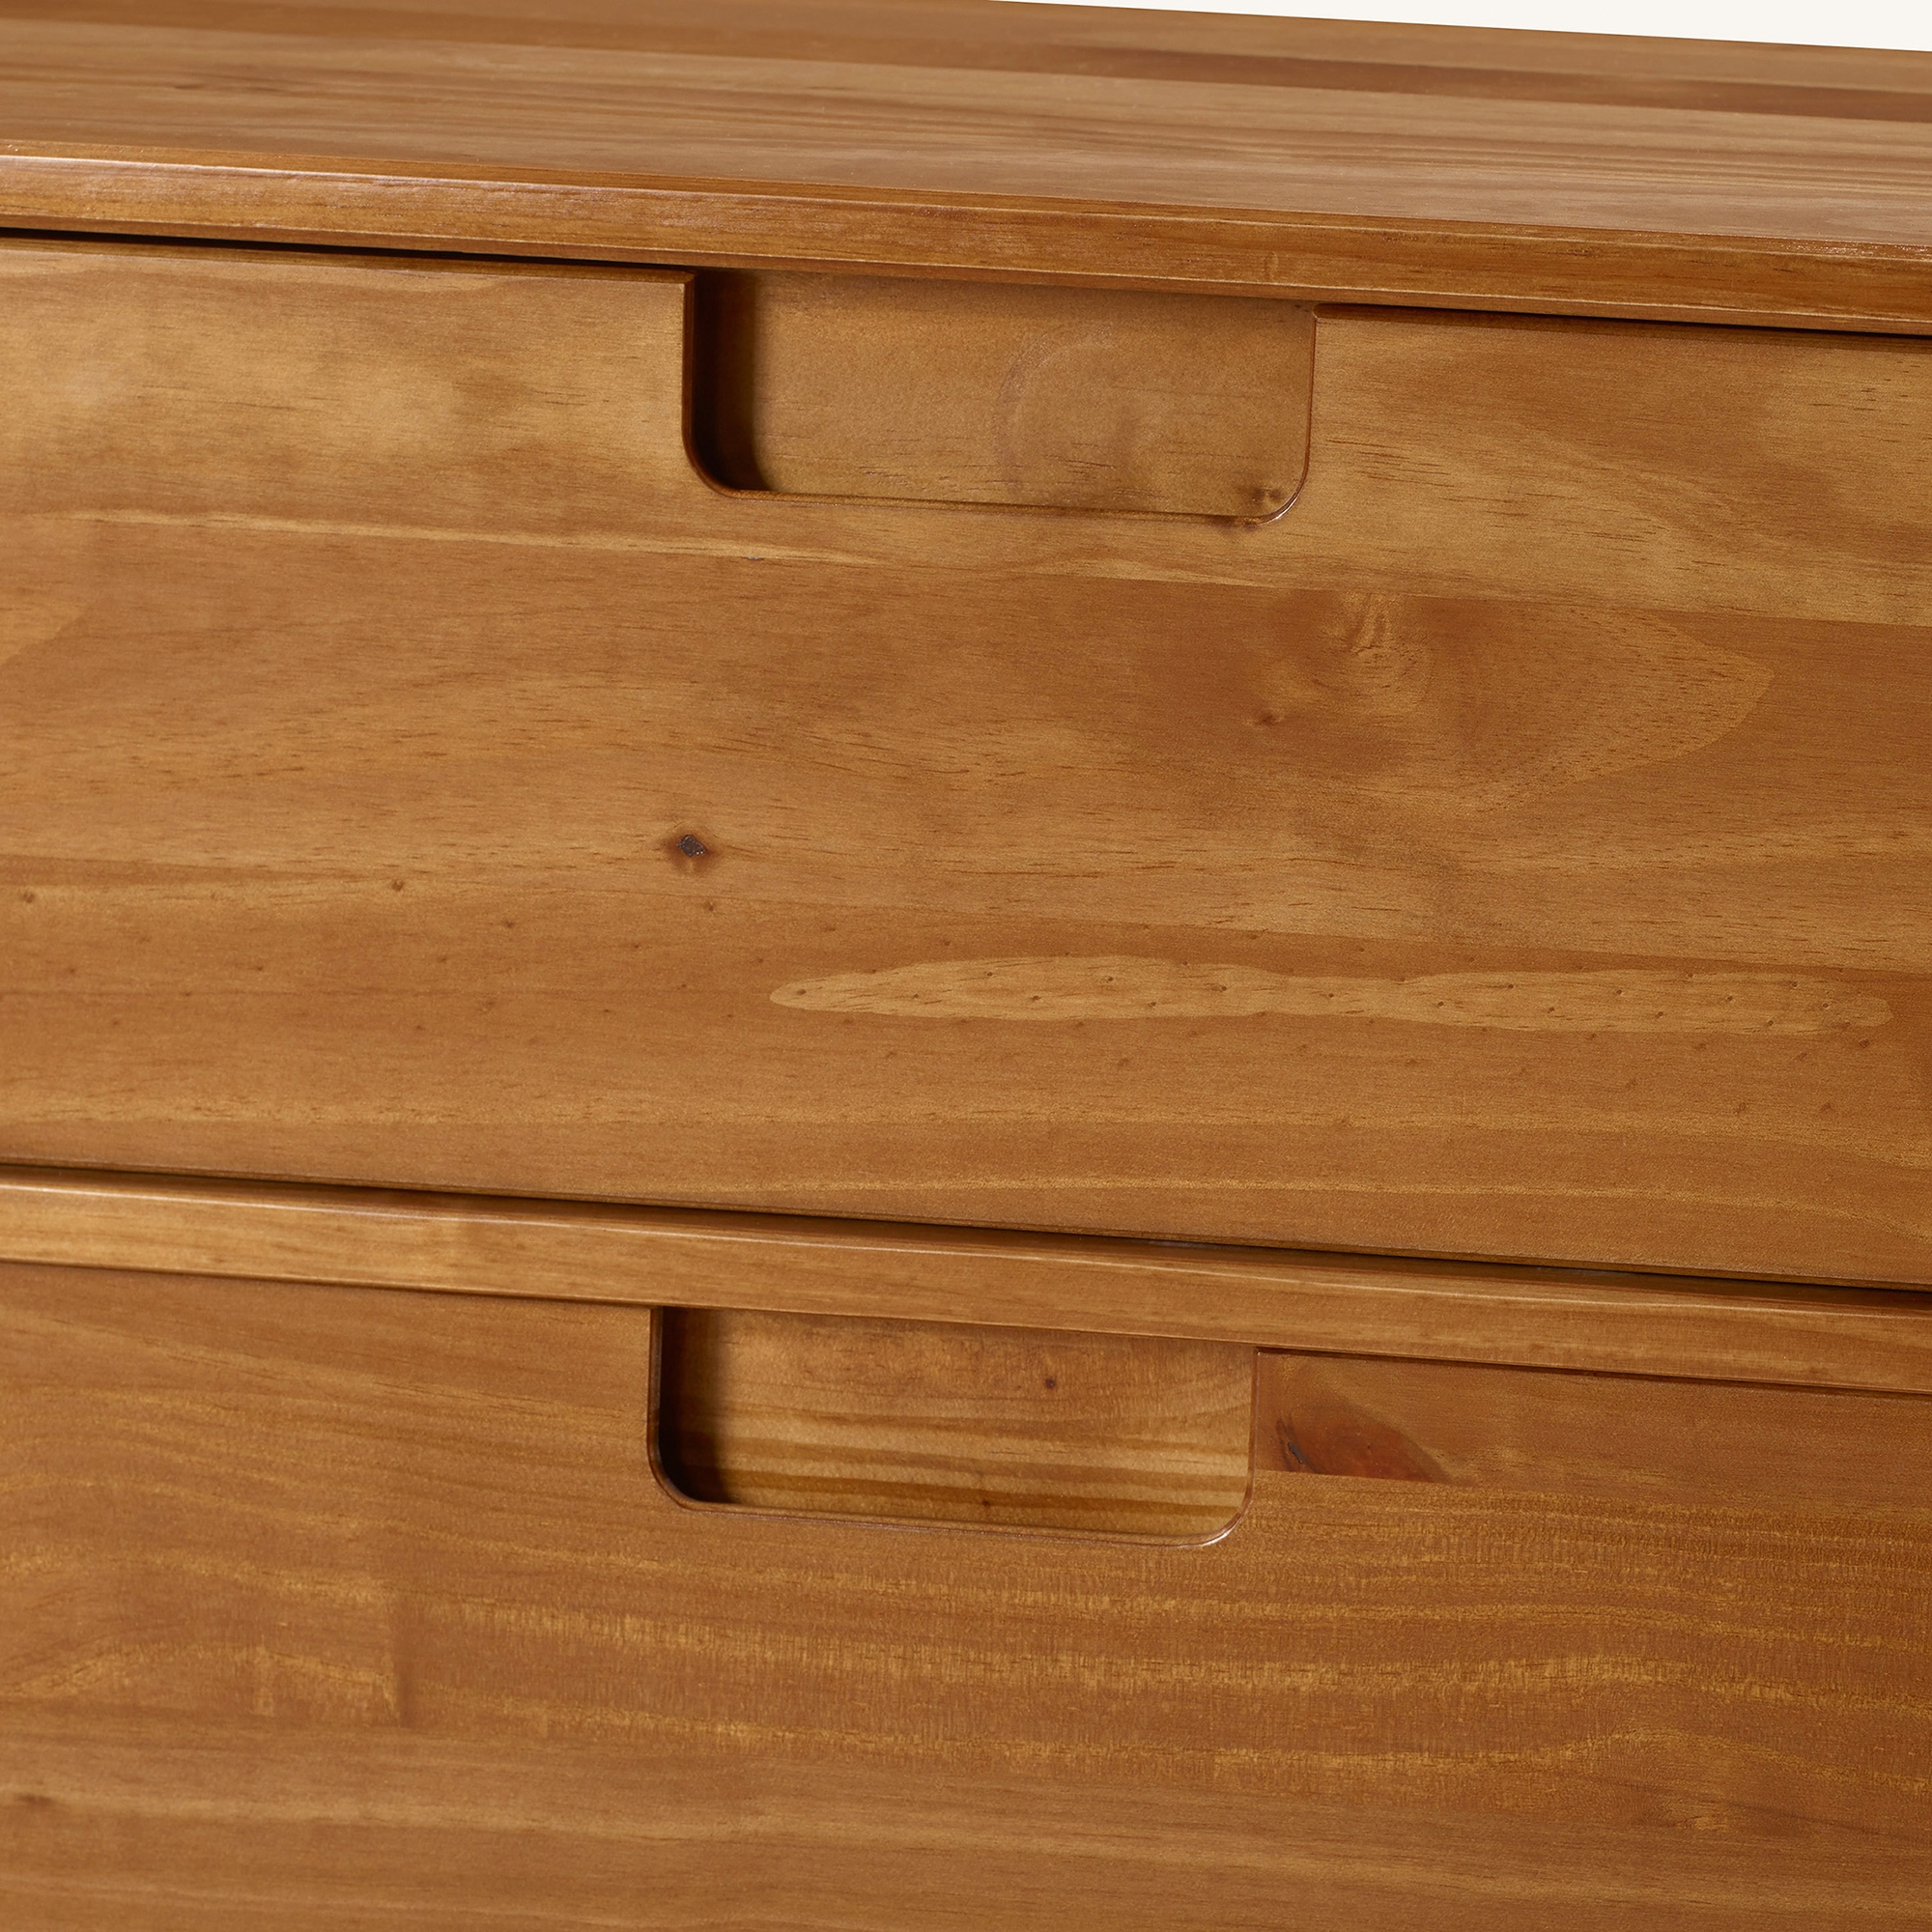 Sloane 6 Drawer Groove Handle Wood Dresser - Caramel - Image 5